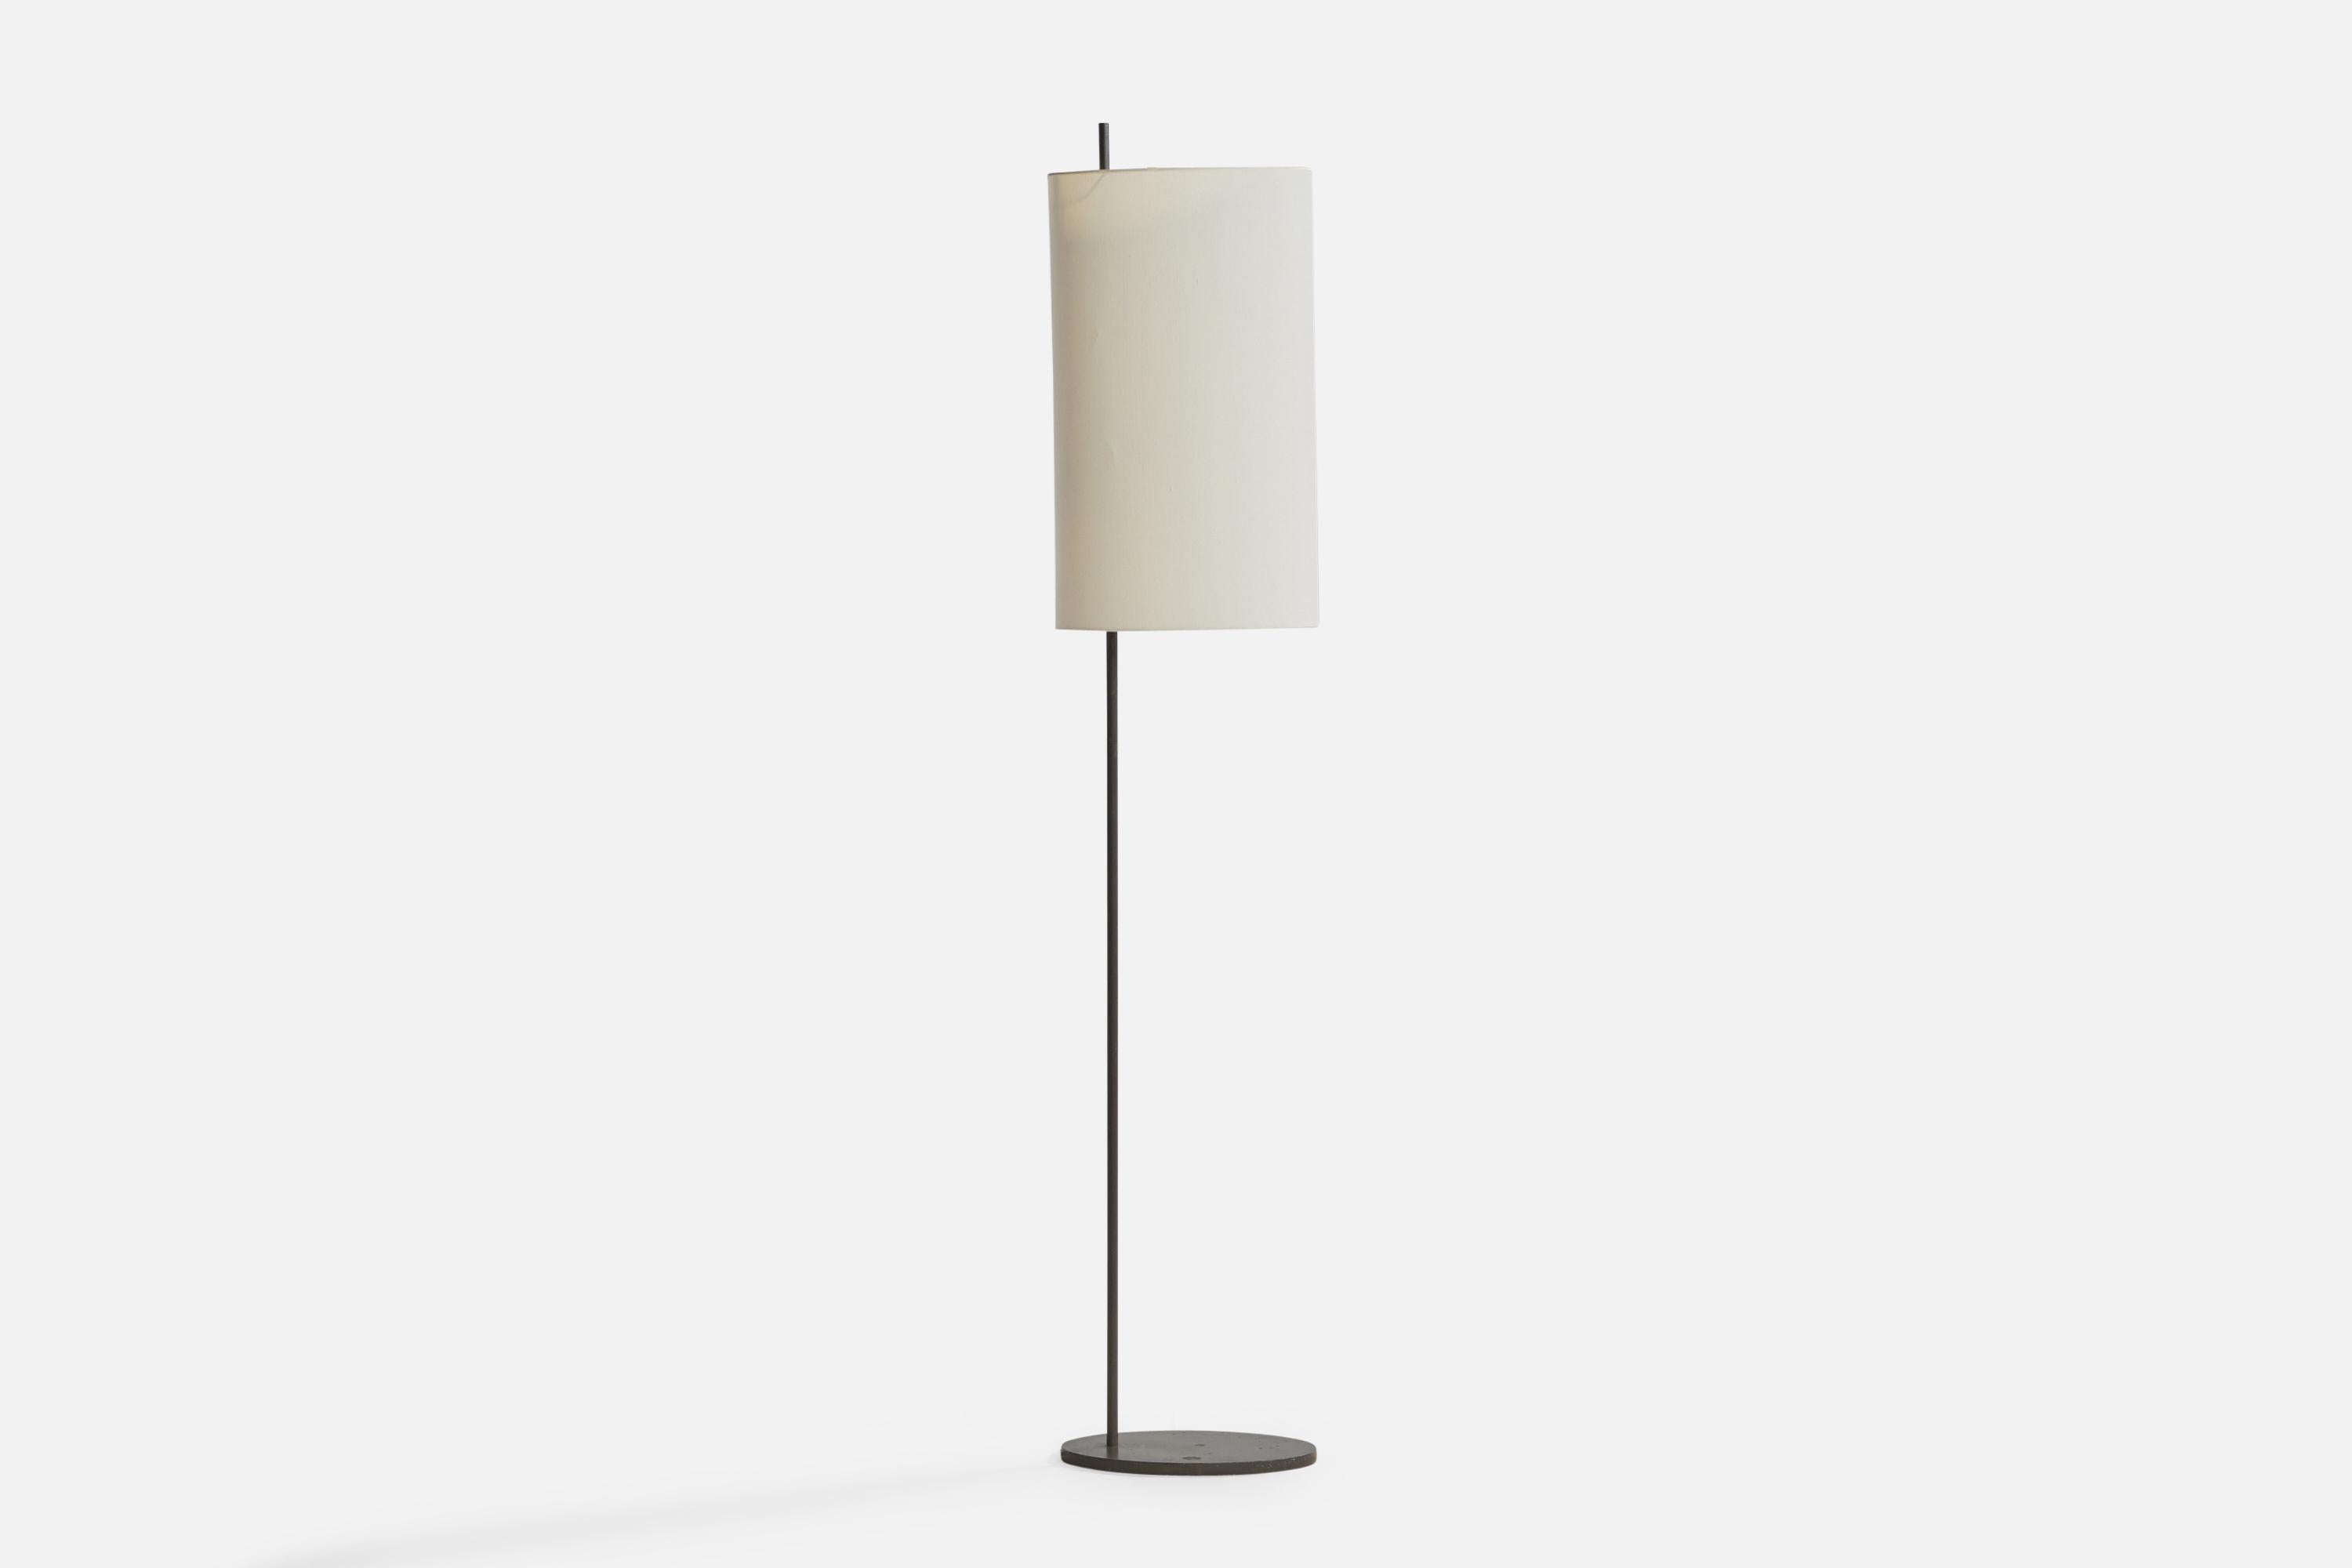 Stehlampe aus grau lackiertem Metall und Papier, entworfen von Arne Jacobsen und hergestellt von Louis Poulsen, Dänemark, ca. 1950er Jahre.

Gesamtabmessungen (Zoll): 71